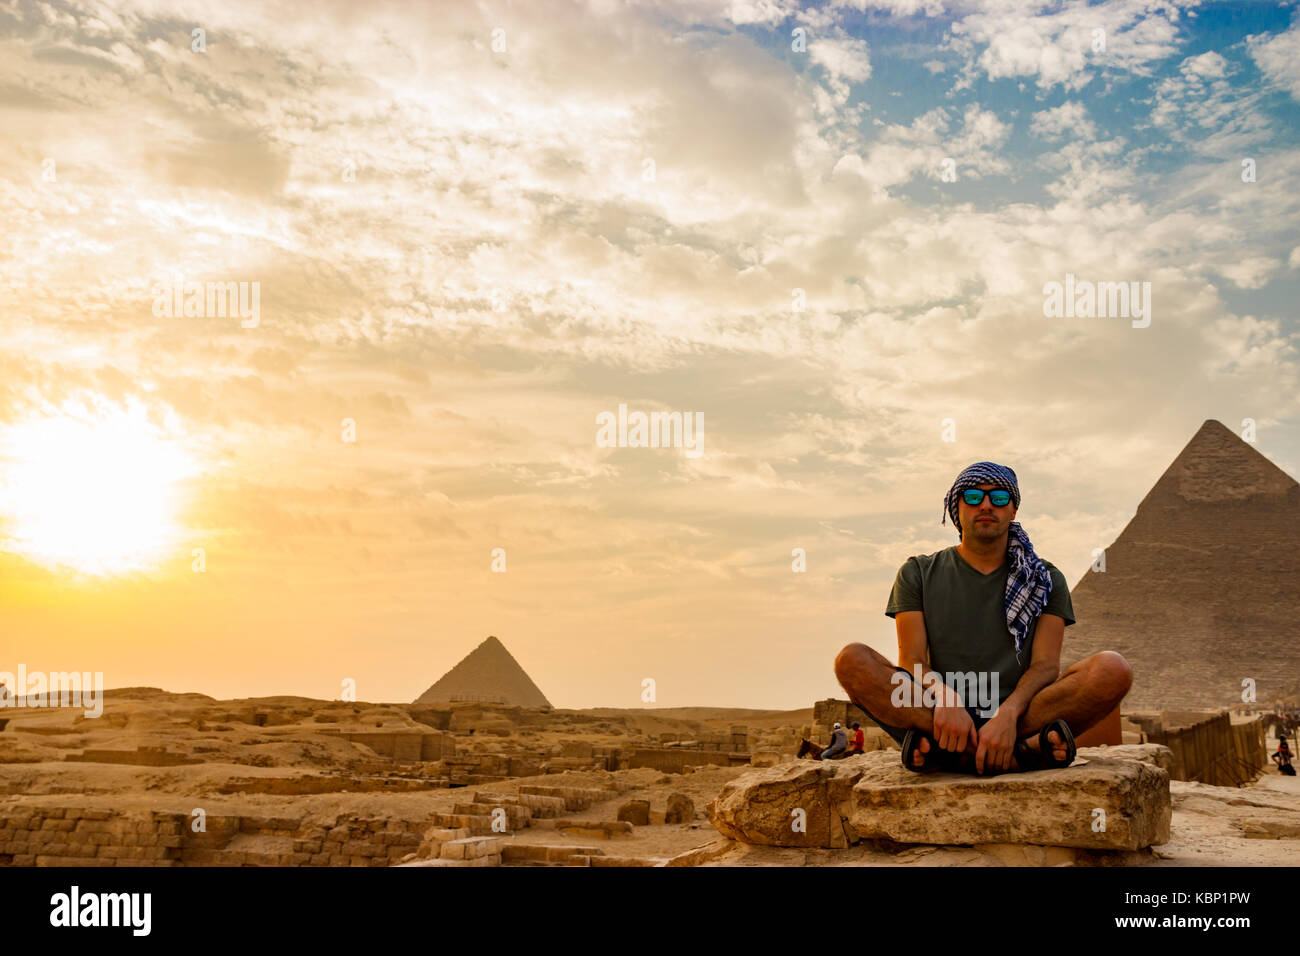 Meditation near the pyramids in Cairo, Egypt Stock Photo